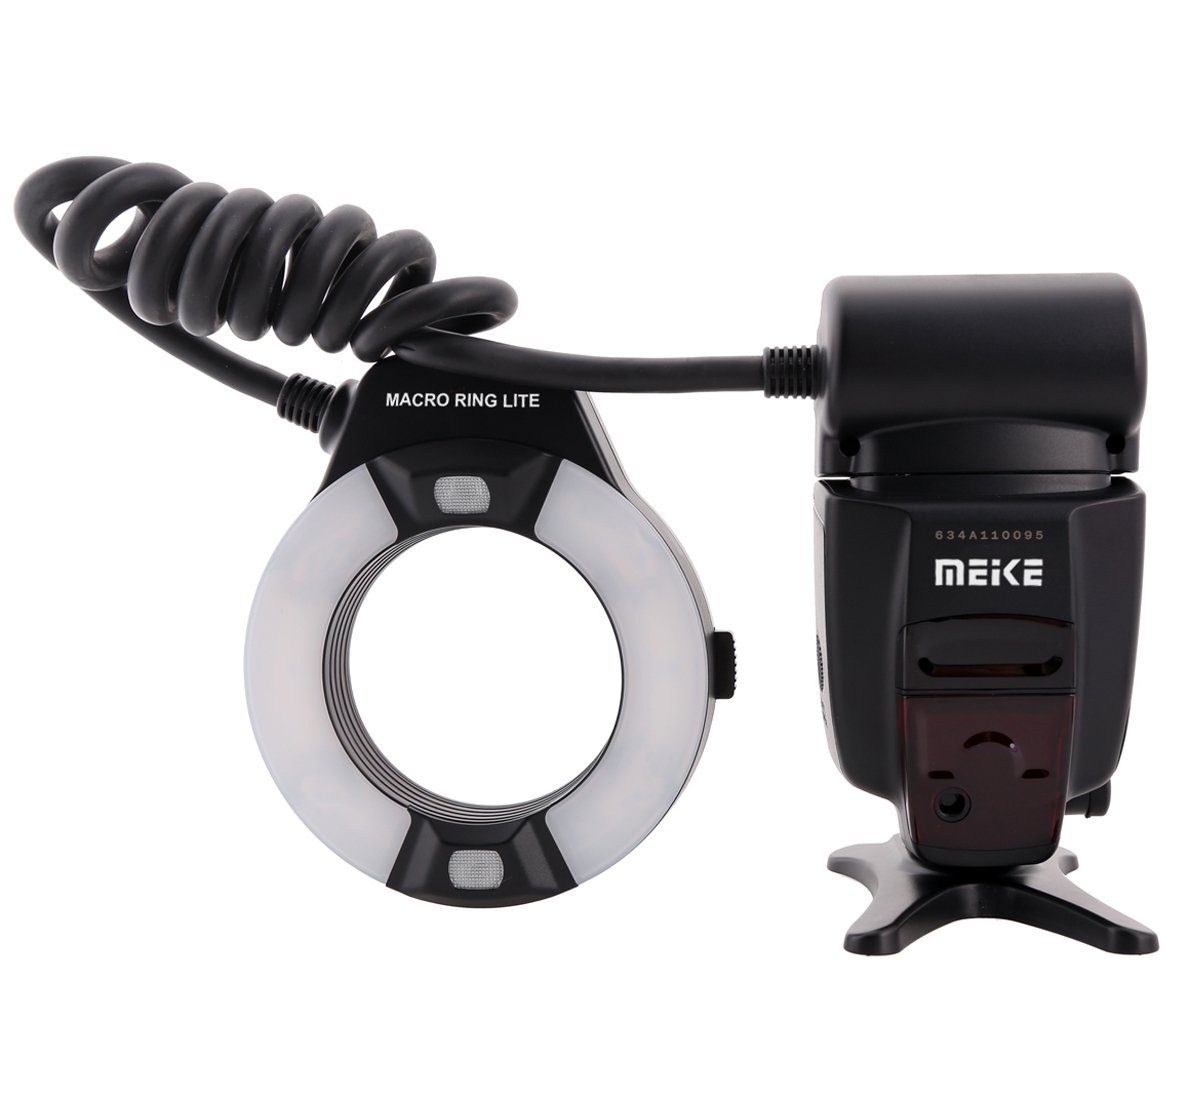 Hilfslicht Blitzgerät Ringblitz MK-14EXT Makro LED Nikon mit Meike TTL für Meike